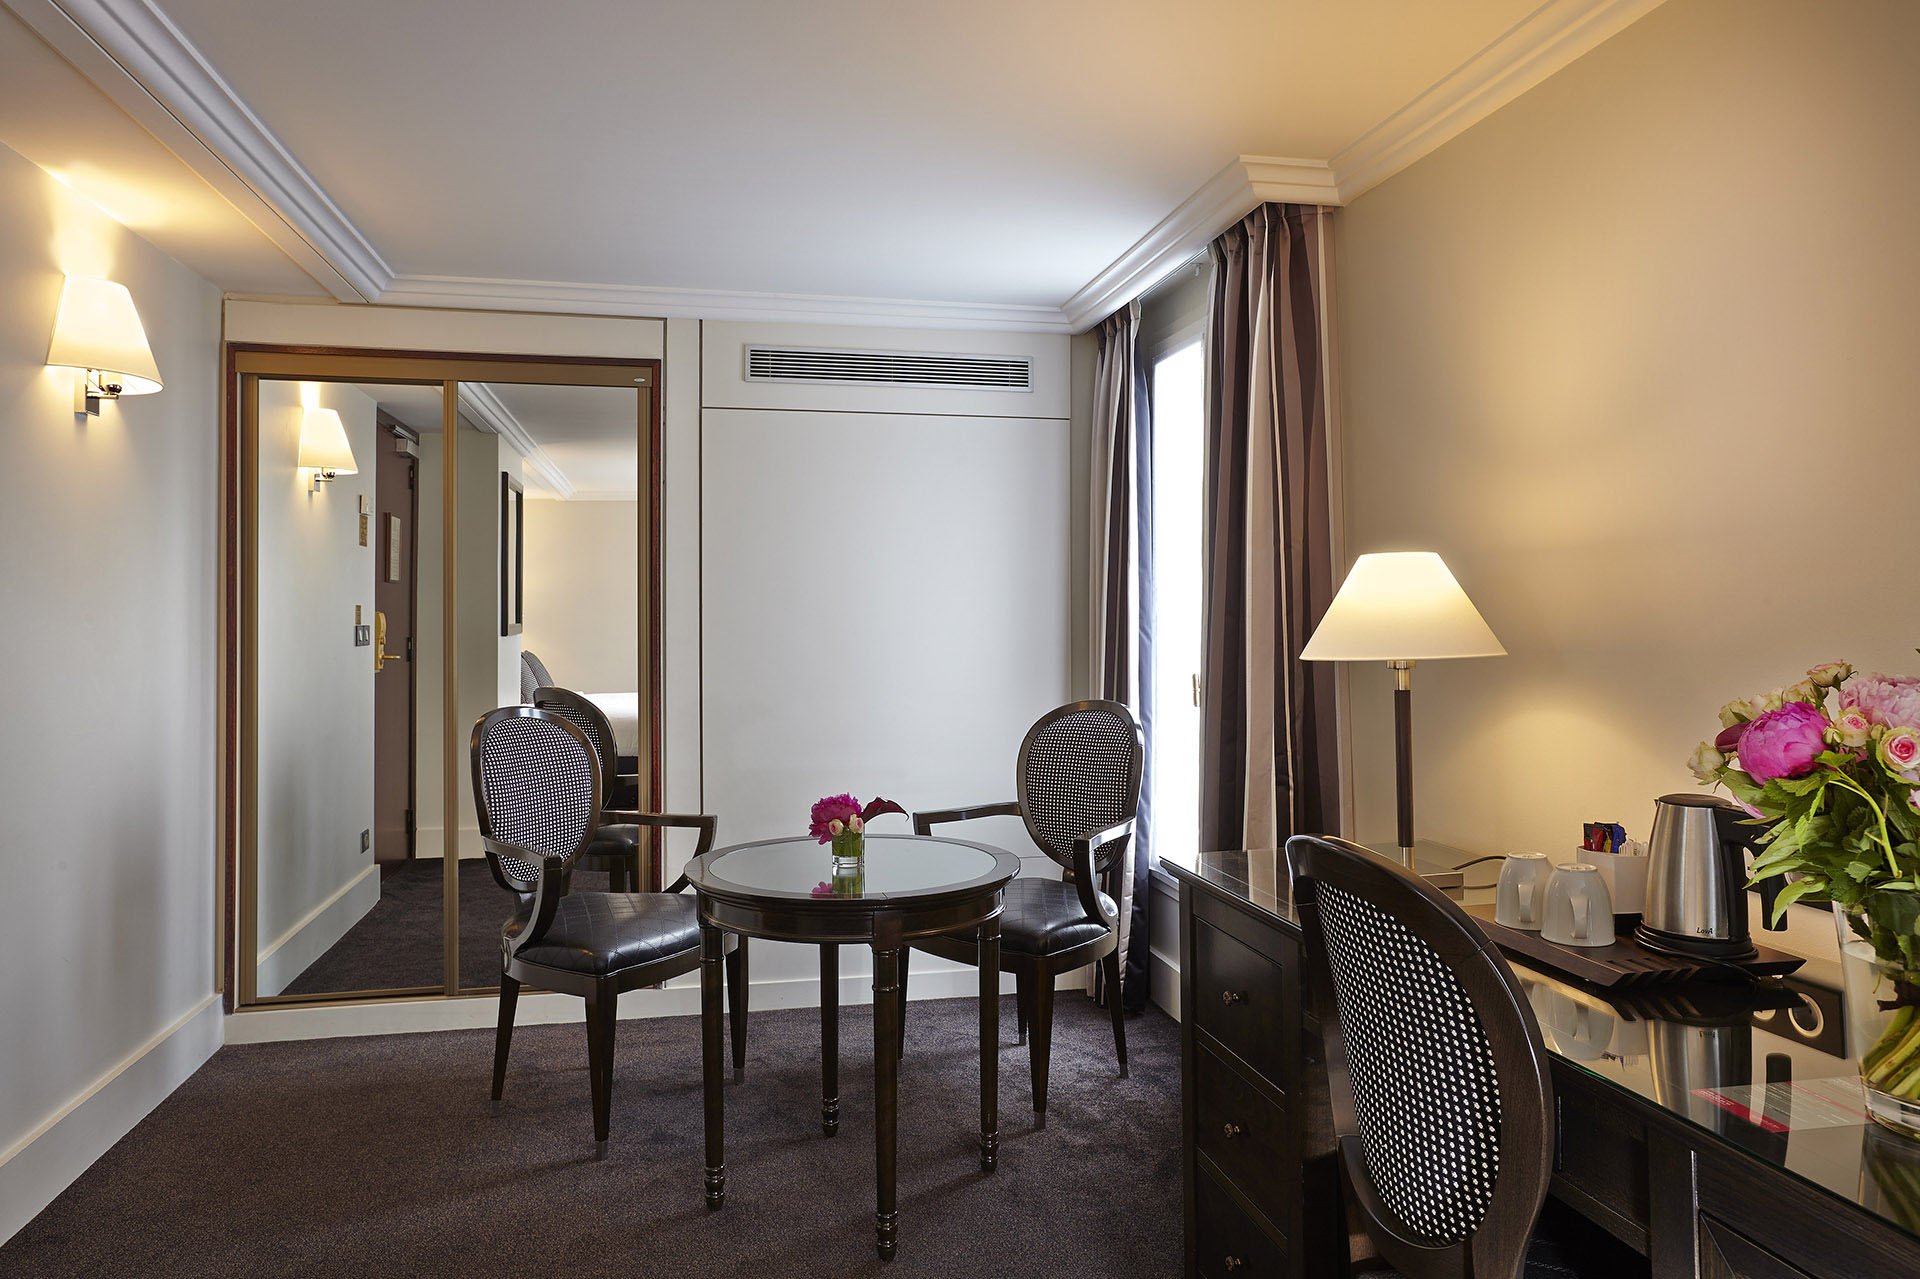 Deluxe Triple Room, Hotel Paris rue Saint Honoré, 4 star hotel Paris Louvre Vendôme, 4 star hotel Saint Honoré